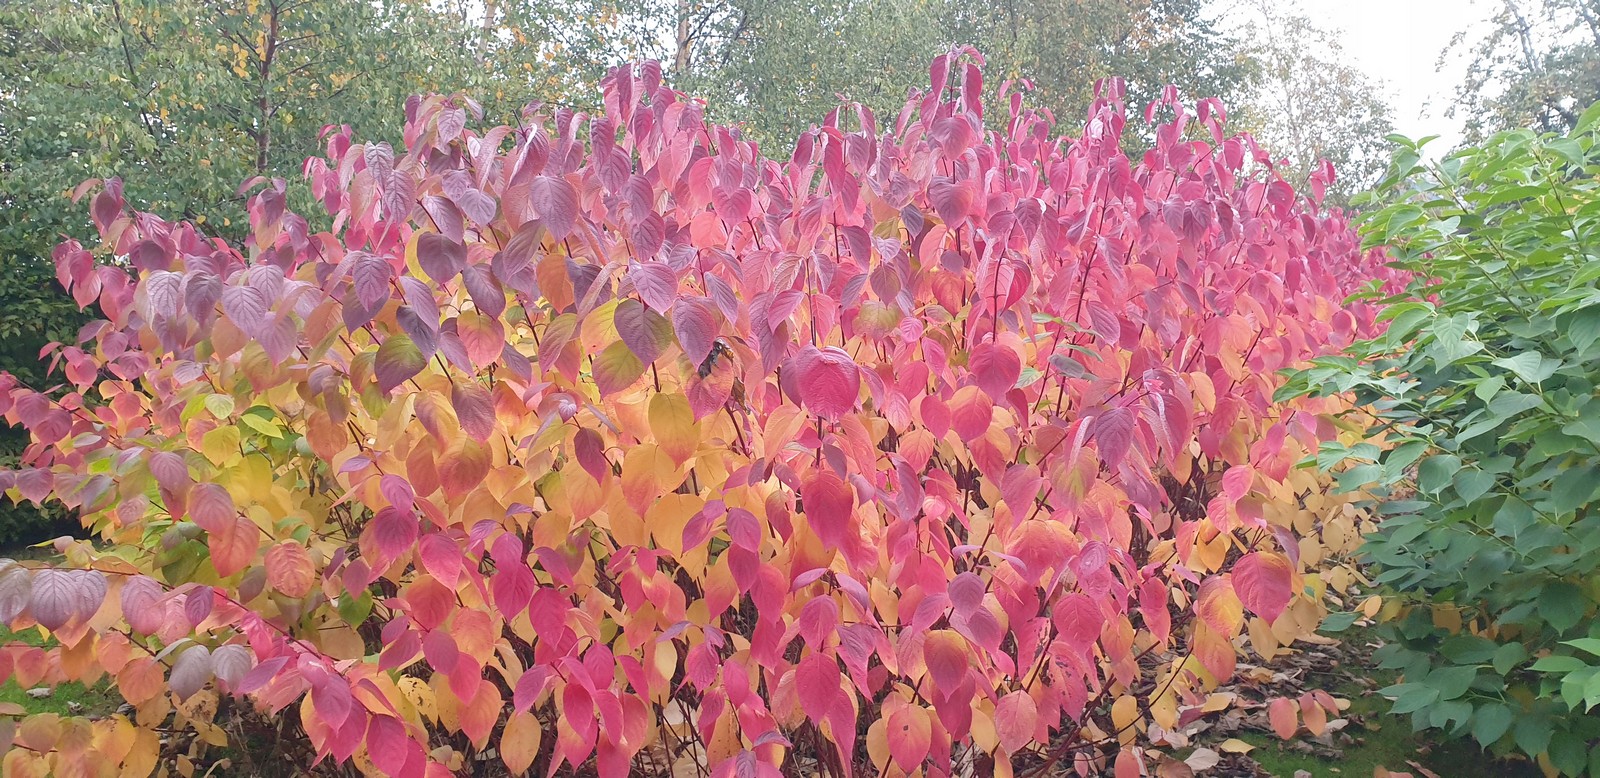 Autumn leaf colour on Dogwoods